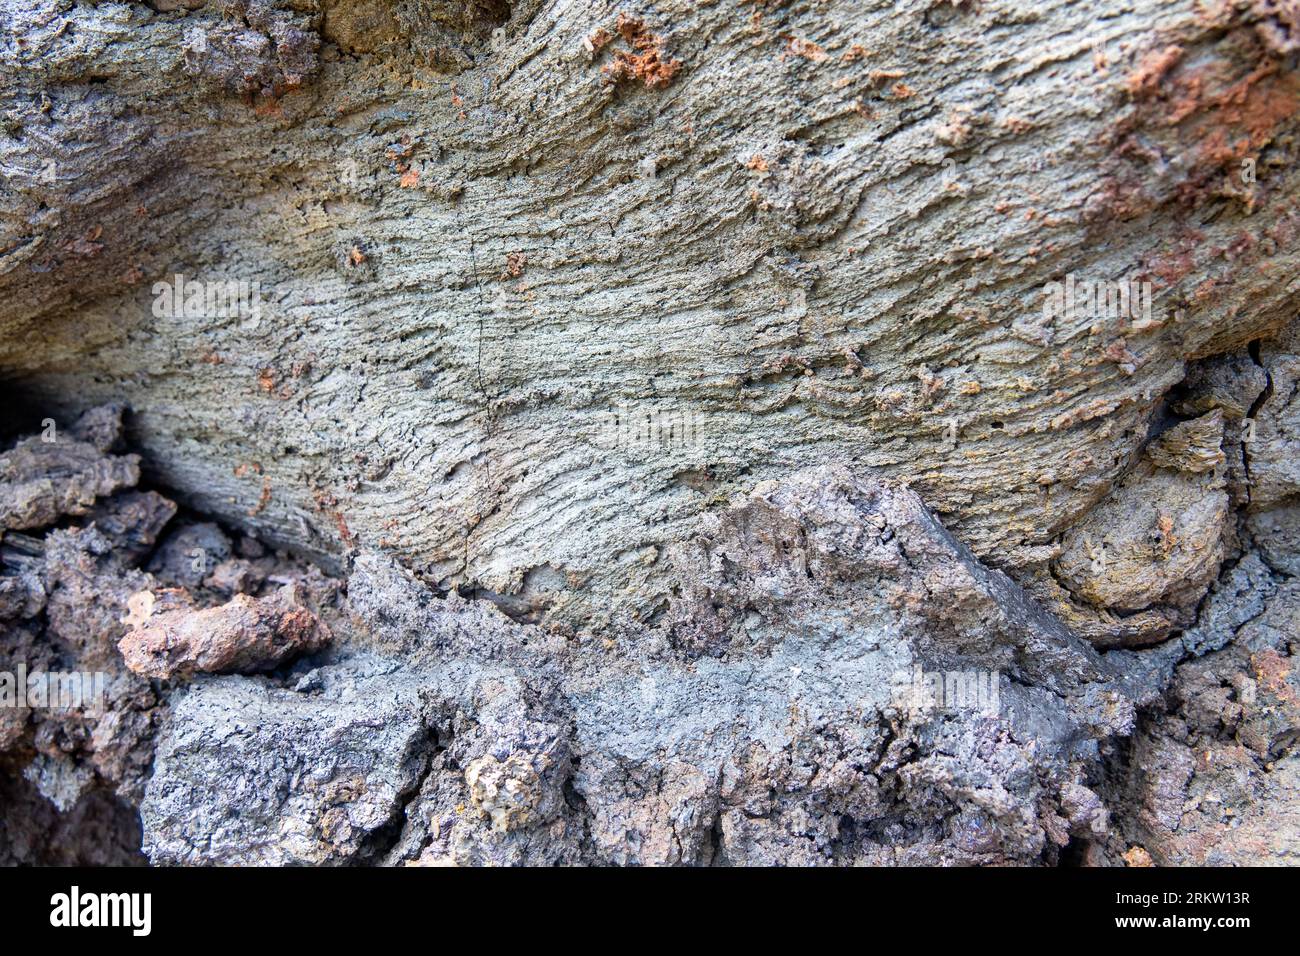 Verschiedene Formen der Basalt-erstarrten Lava. Viskose vulkanische Lava, zementiert mit Sand, Bimsen und Brekzien Tephra (Vulkanasche). Kamtschatka, Russland Stockfoto